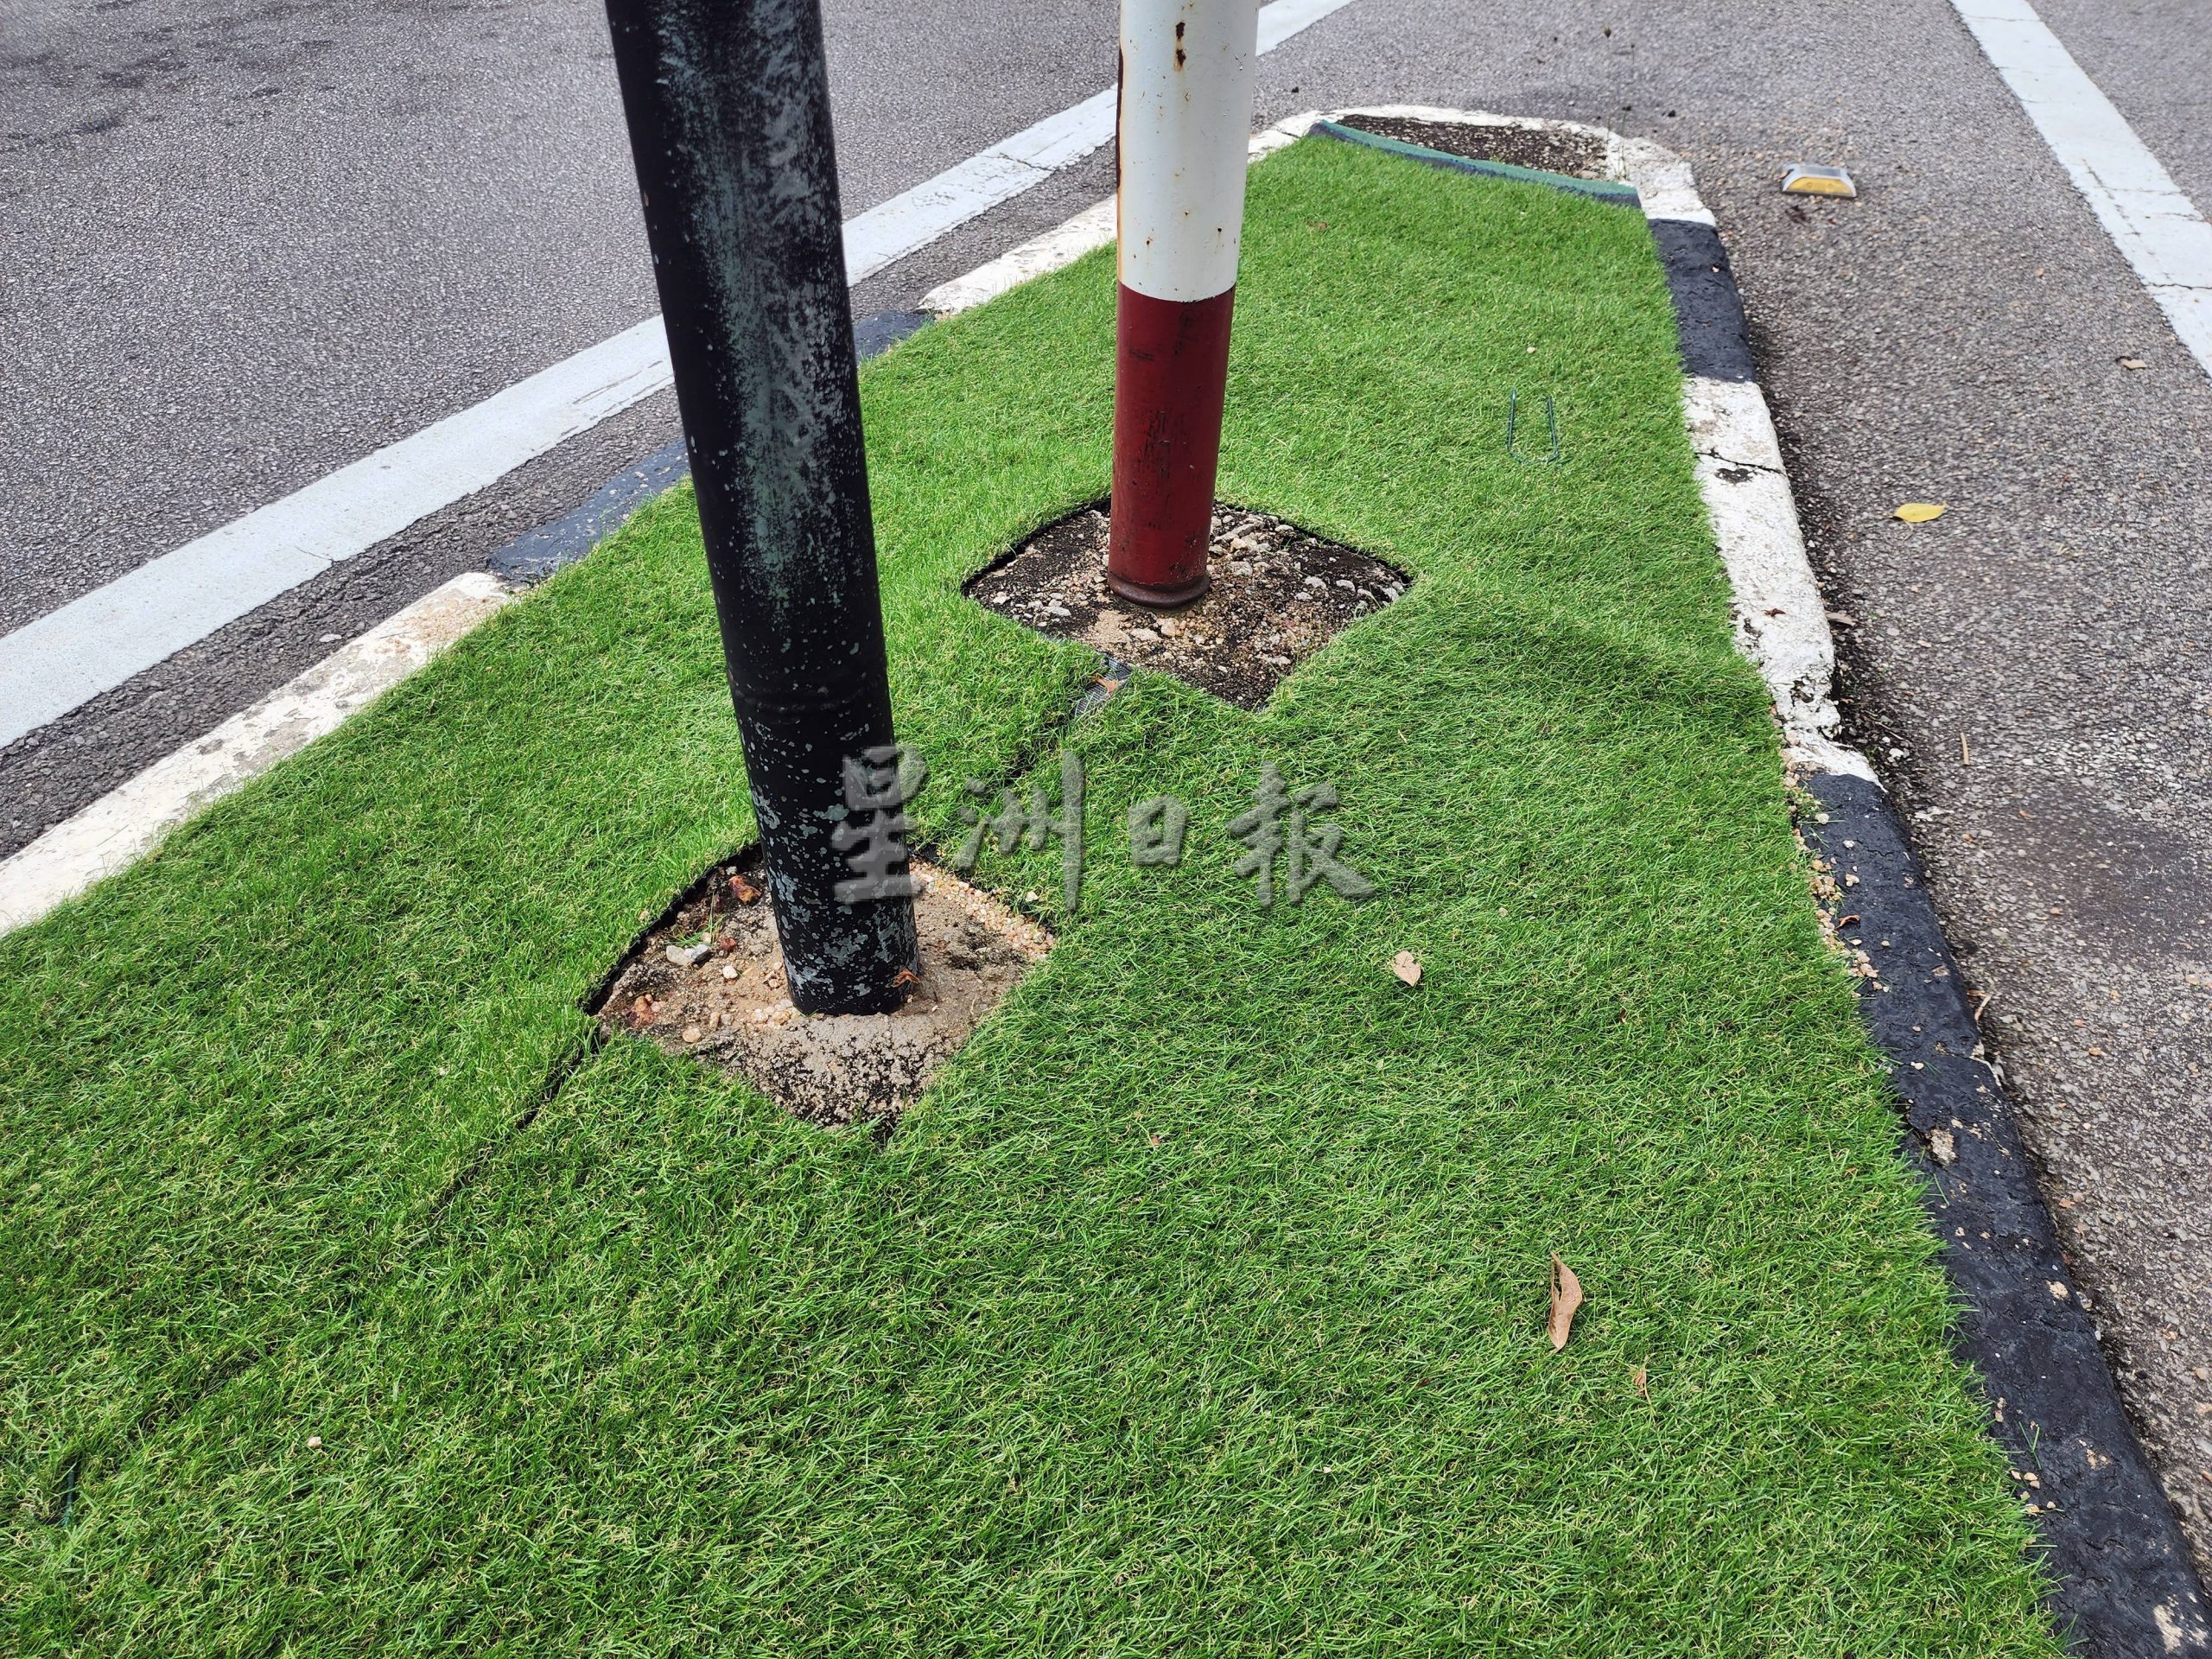 （古城第二版主文）刘志俍：帆加南马交通灯人造草坪没诚意，也失去绿化的意义